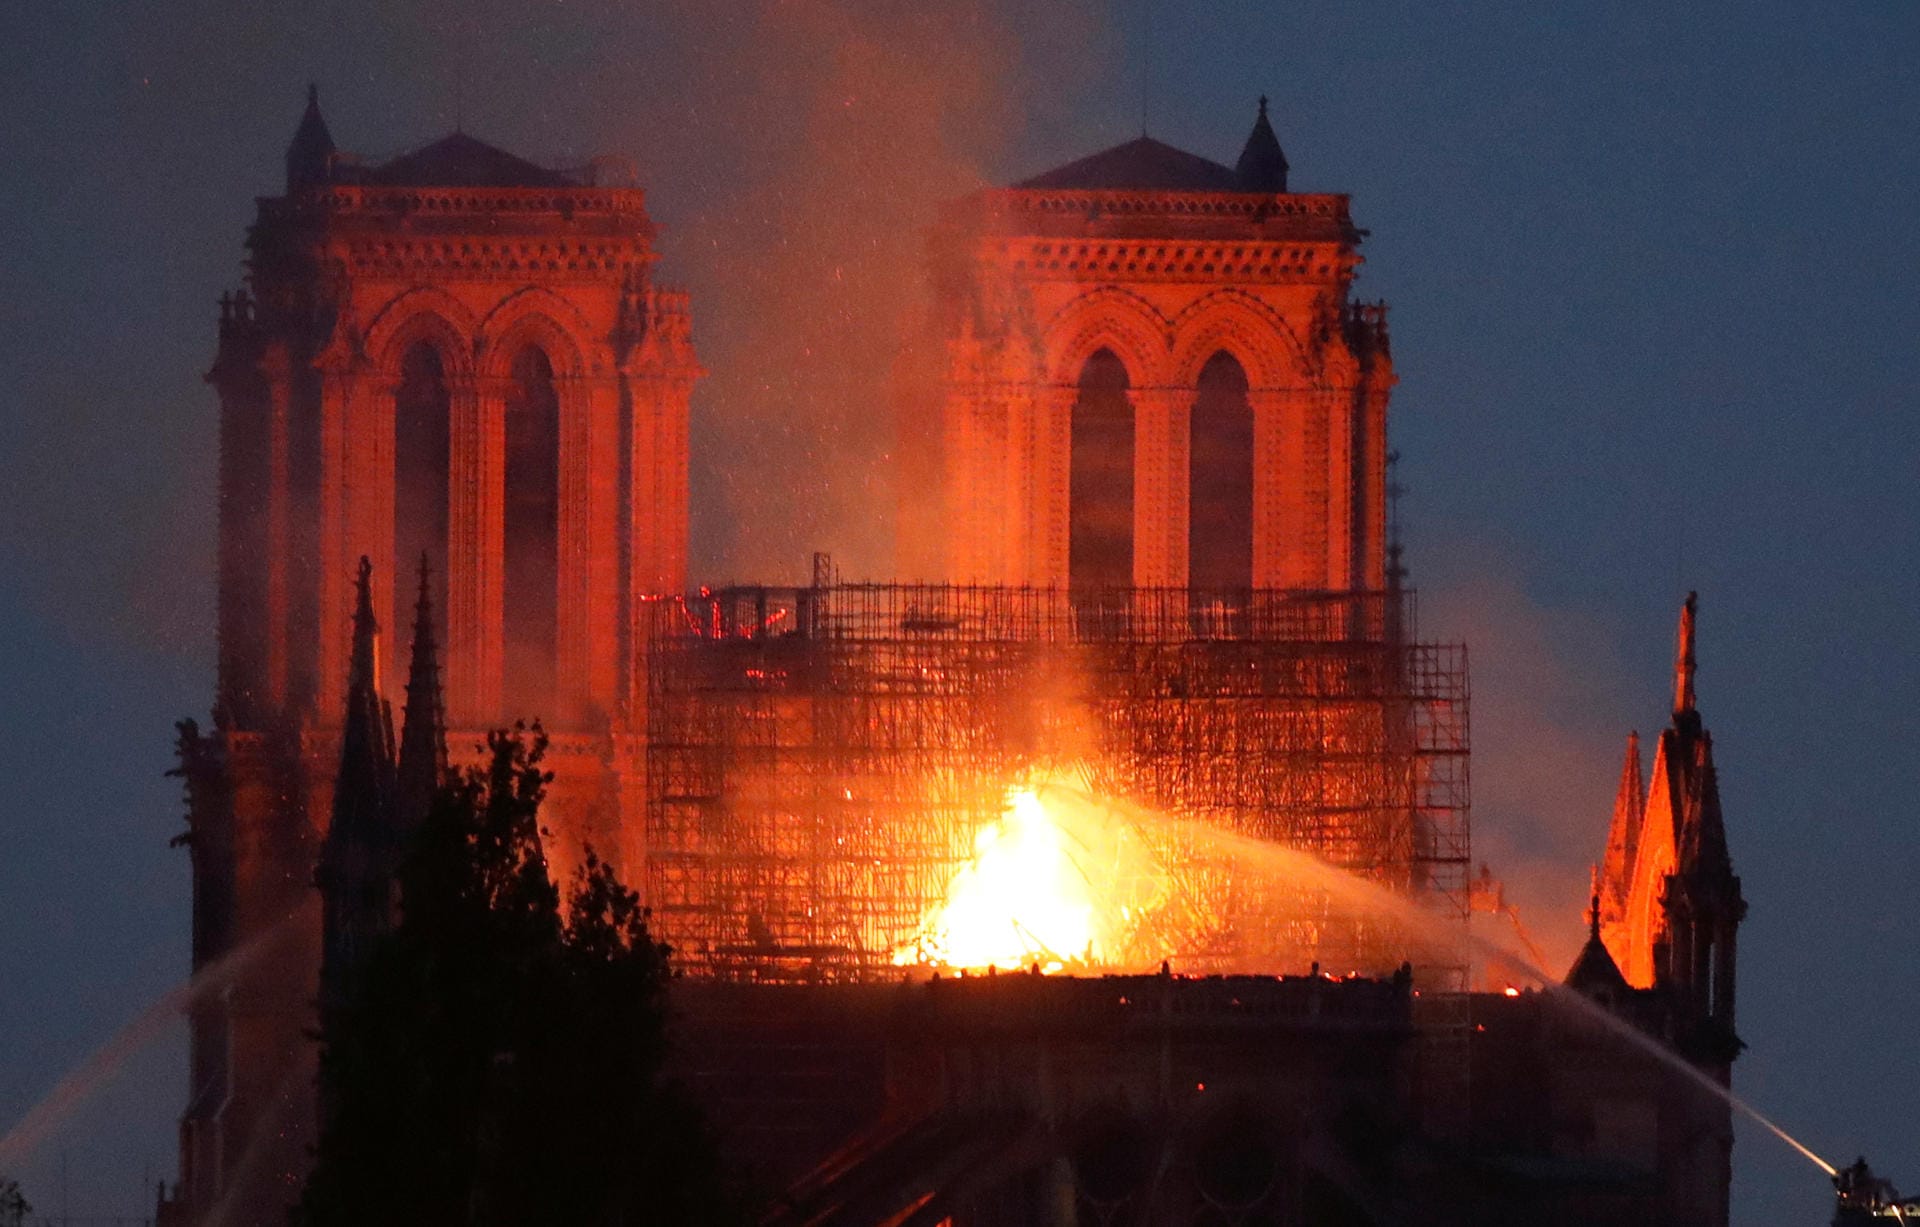 Am Montagabend sah man aus der Distanz die ikonische Silhouette der Kathedrale Notre-Dame in Flammen stehen. Rauch zog durch Paris. Die Kirche, deren Umriss man auf der ganzen Welt kennt, leuchtete orangefarben.